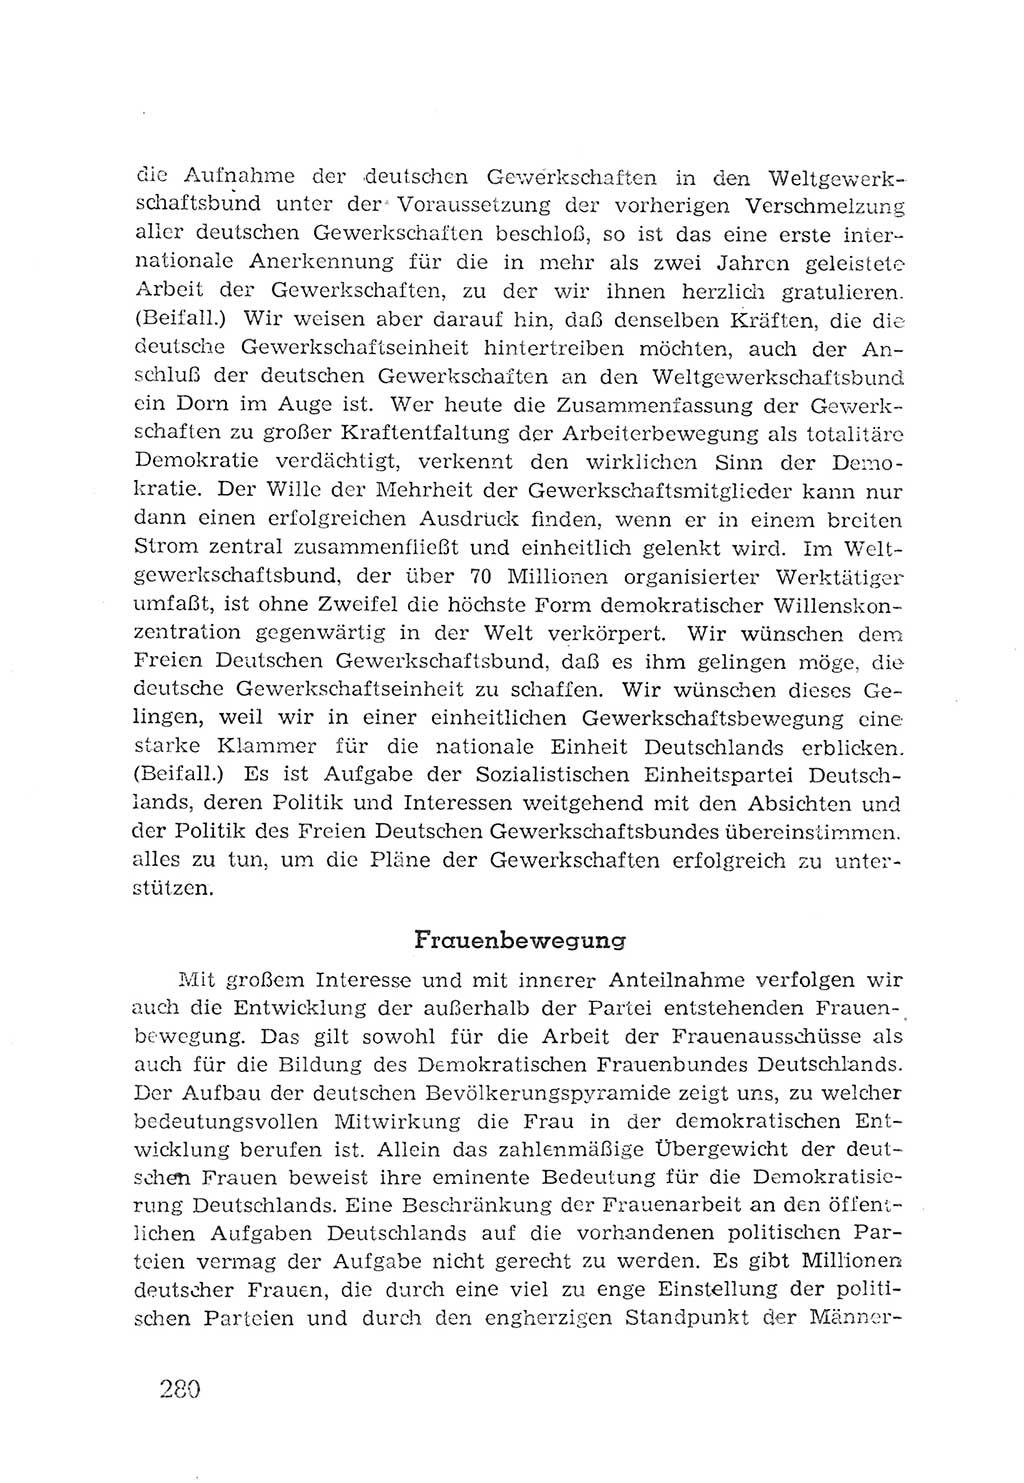 Protokoll der Verhandlungen des 2. Parteitages der Sozialistischen Einheitspartei Deutschlands (SED) [Sowjetische Besatzungszone (SBZ) Deutschlands] 1947, Seite 280 (Prot. Verh. 2. PT SED SBZ Dtl. 1947, S. 280)